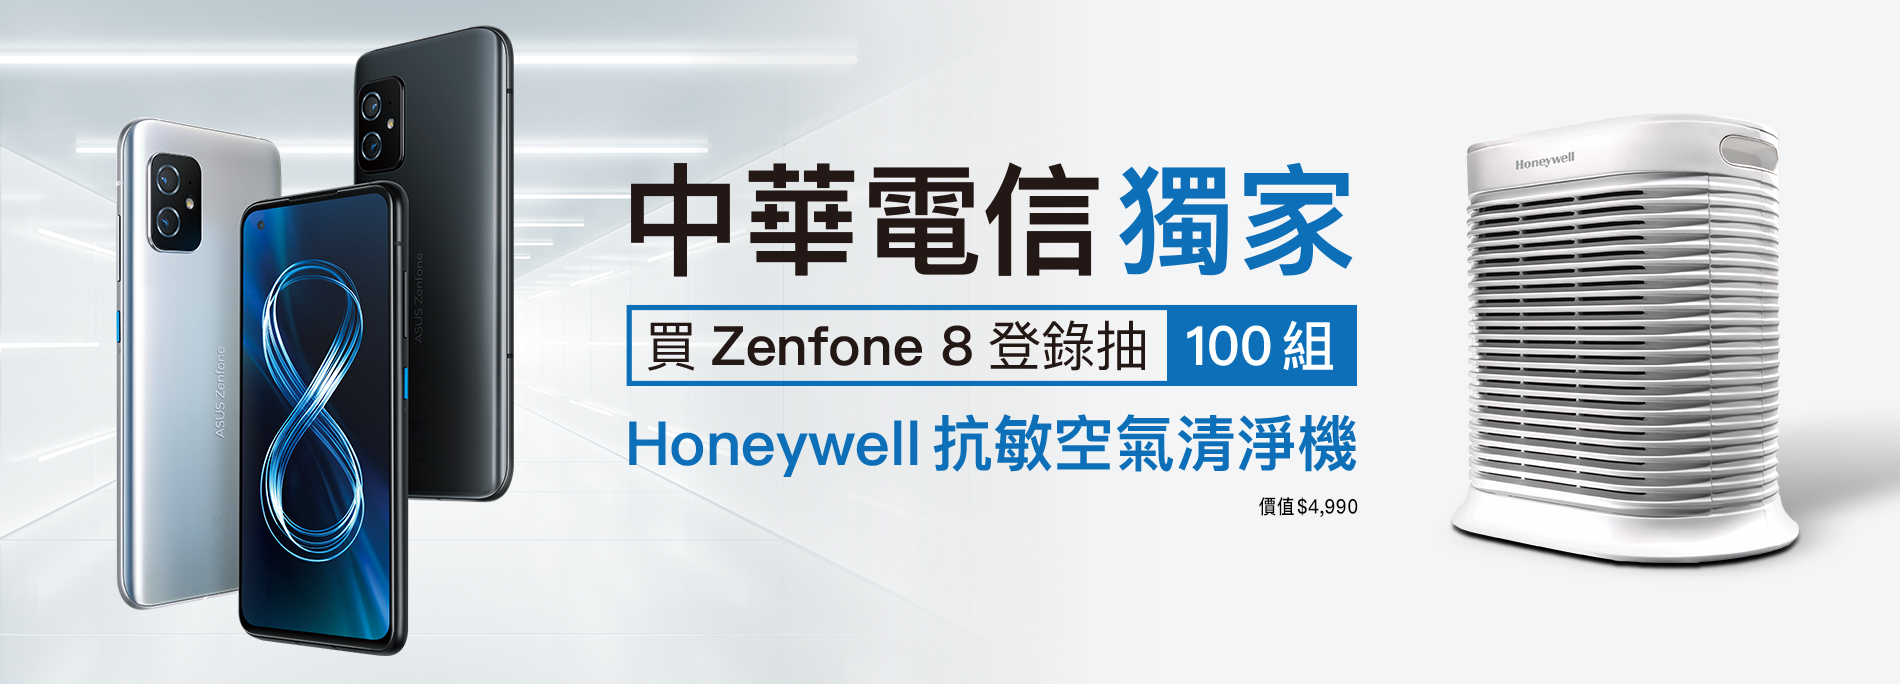 【中華電信獨家】買Zenfone 8 抽100組「Honeywell抗敏空氣清淨機」